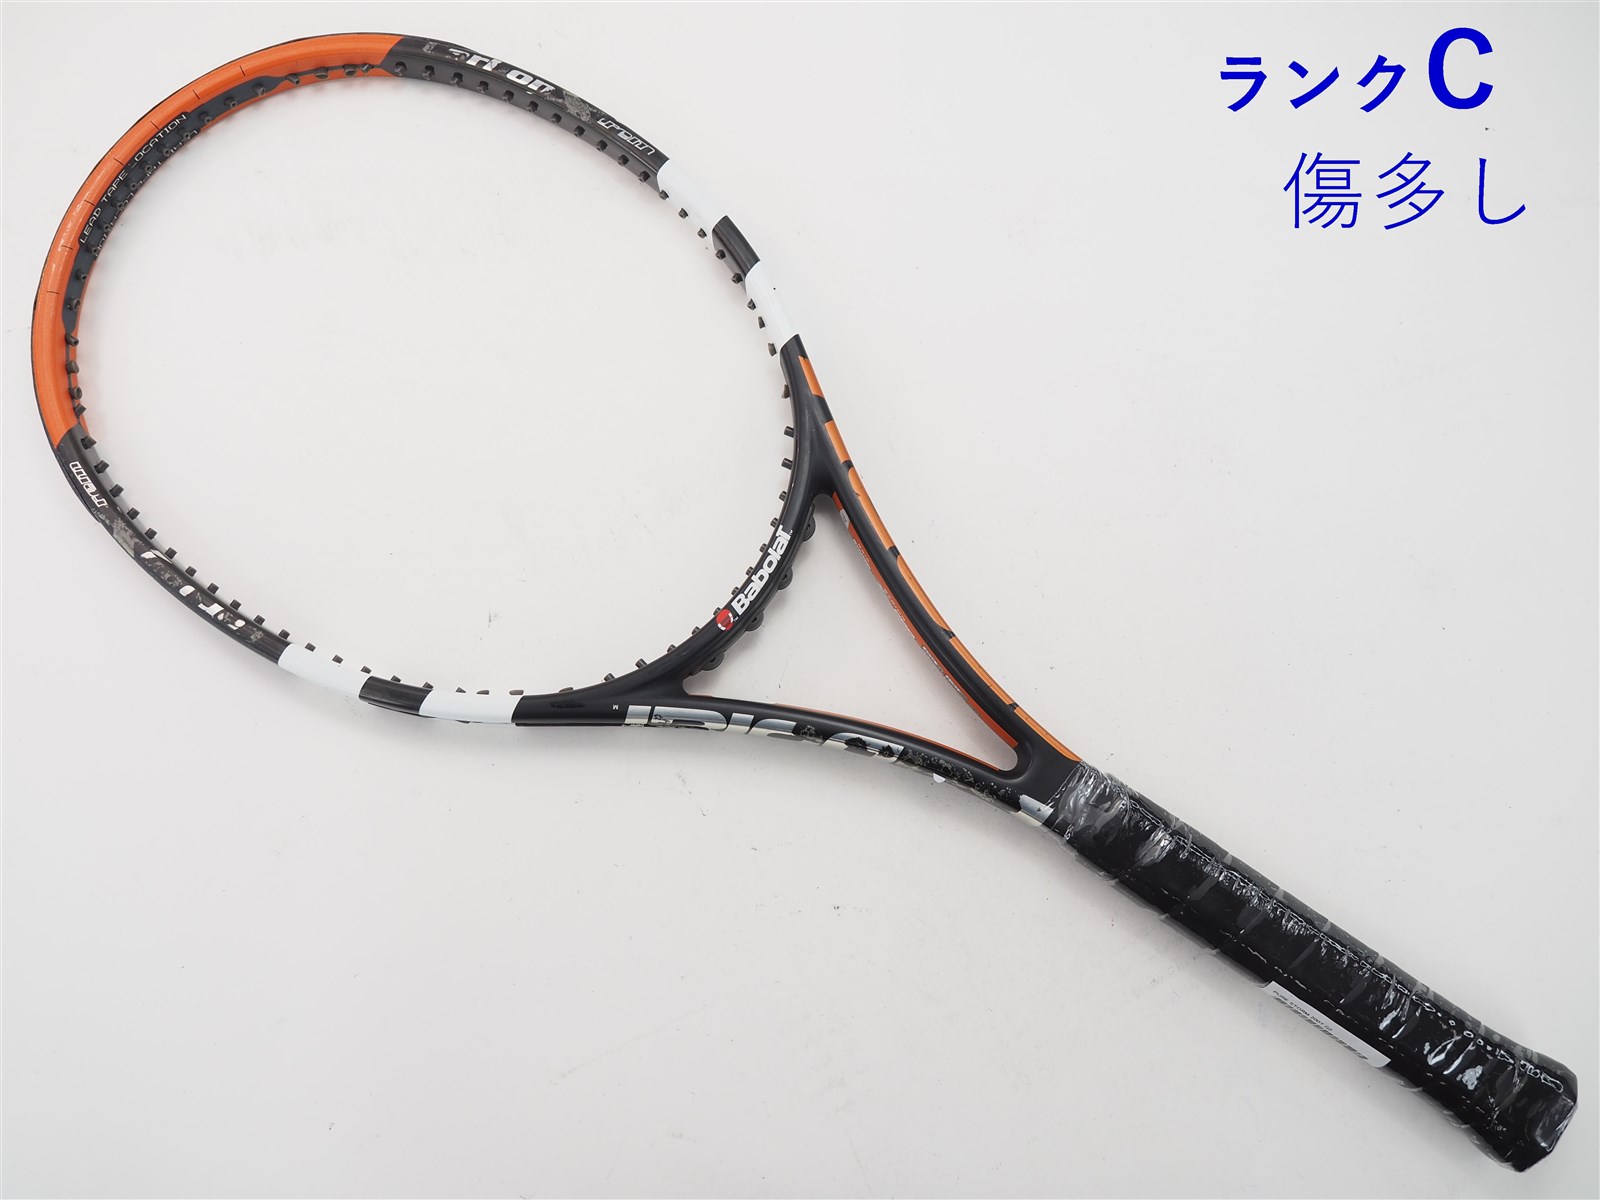 テニスラケット バボラ アエロストーム 2007年モデル【一部グロメット割れ有り】 (G2)BABOLAT AERO STORM 2007ガット無しグリップサイズ